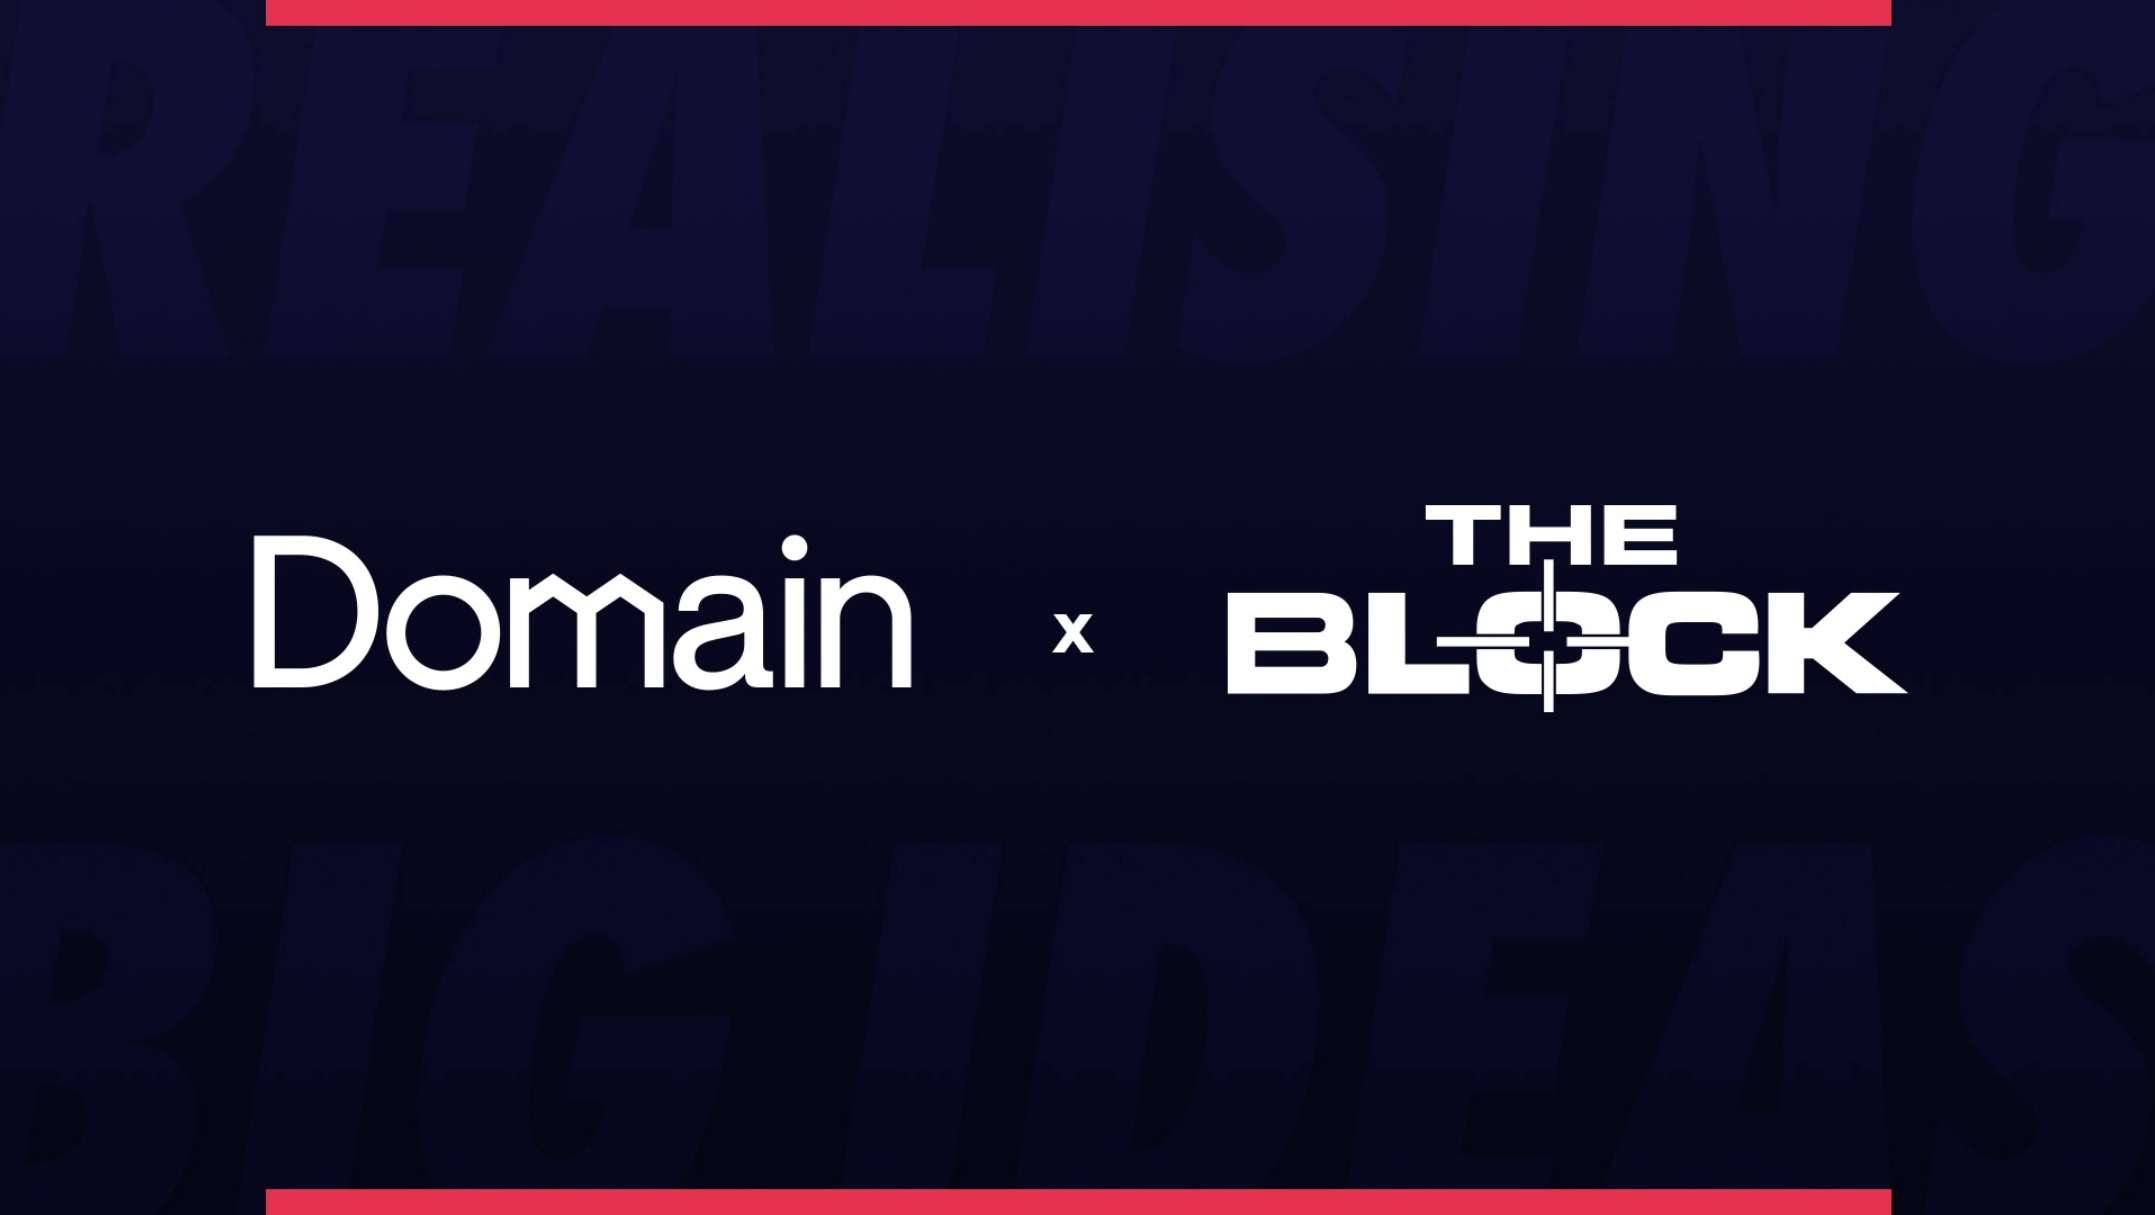 Domain x The Block